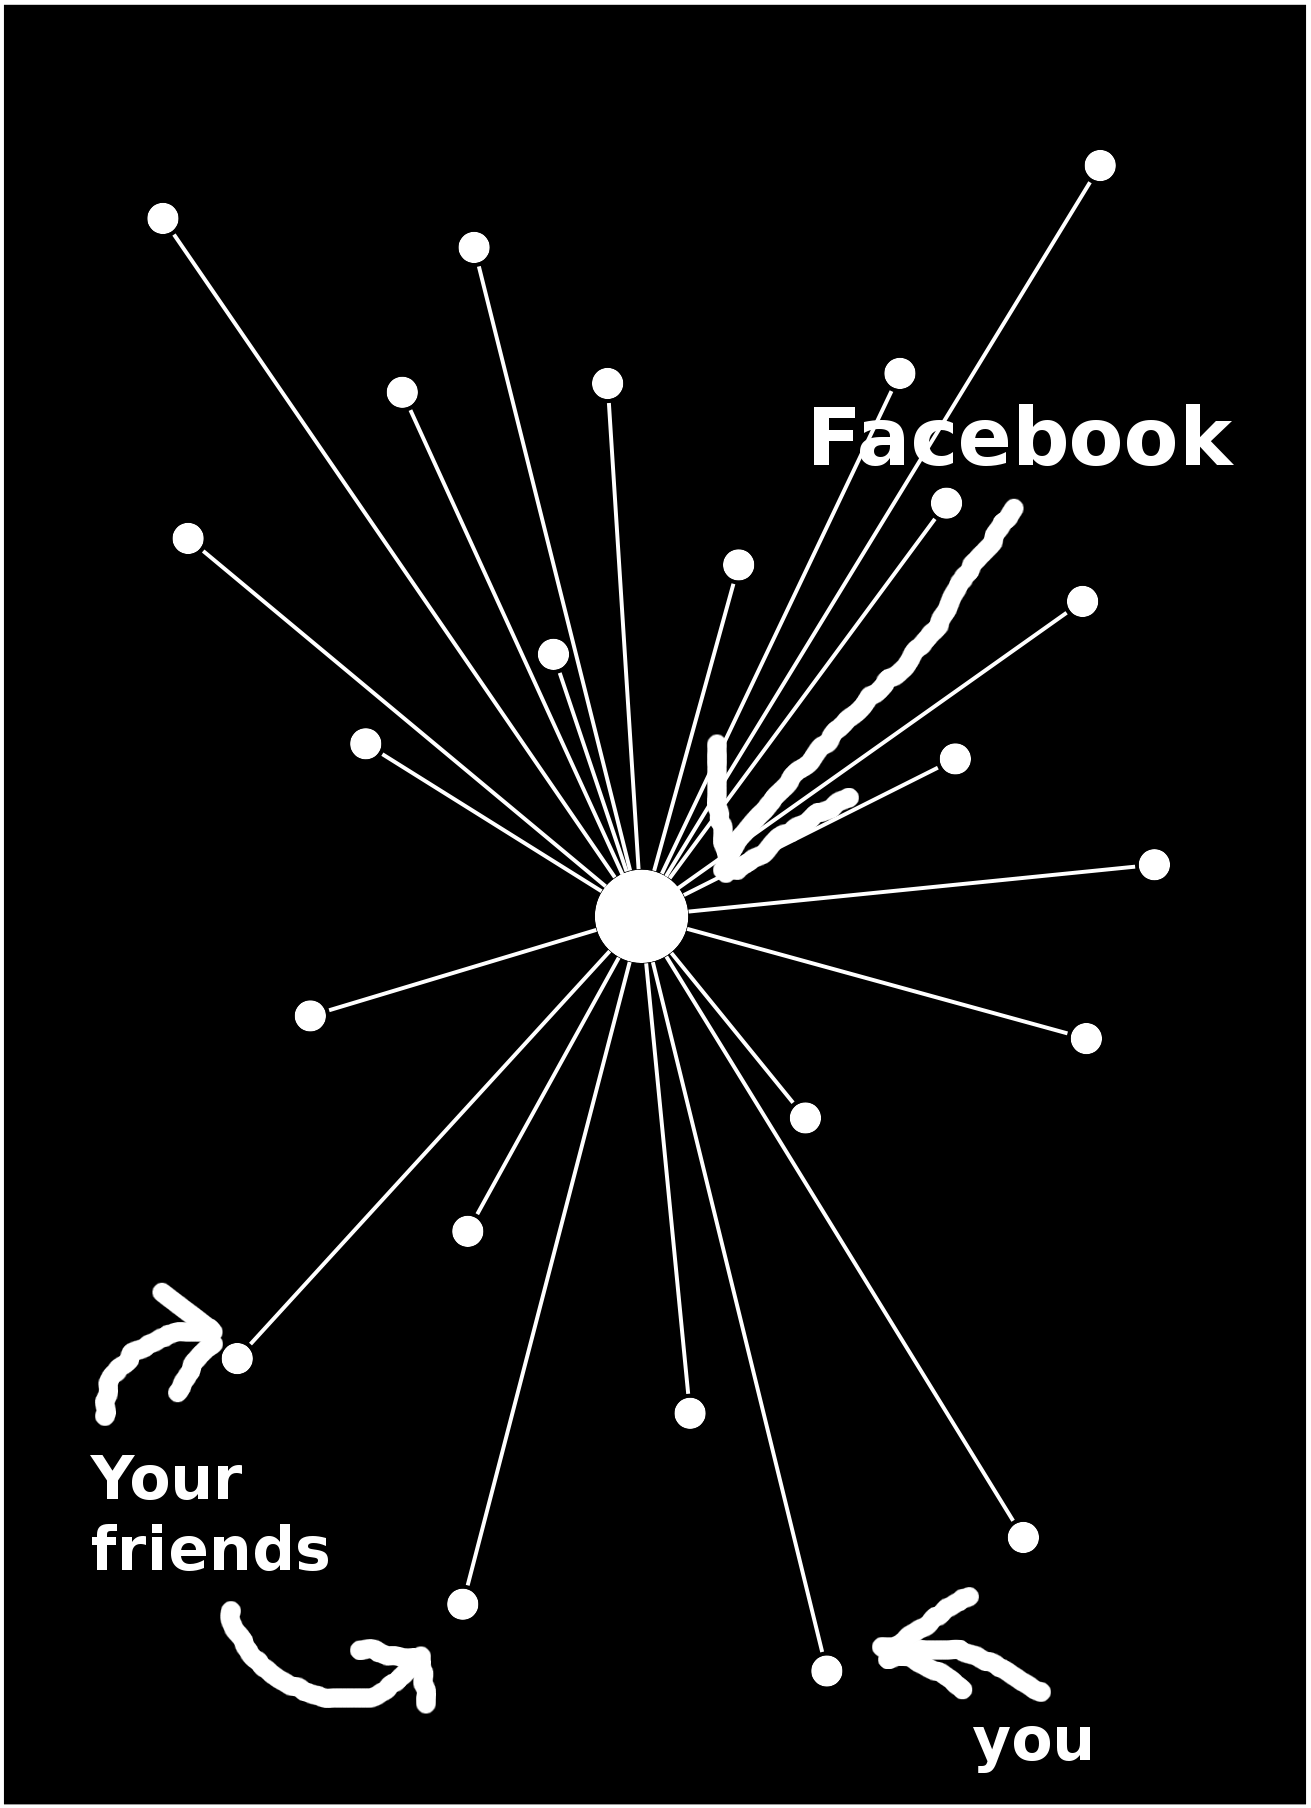 Zentralisiertes System: Facebook entscheidet, mit wem du reden und was du sagen kannst